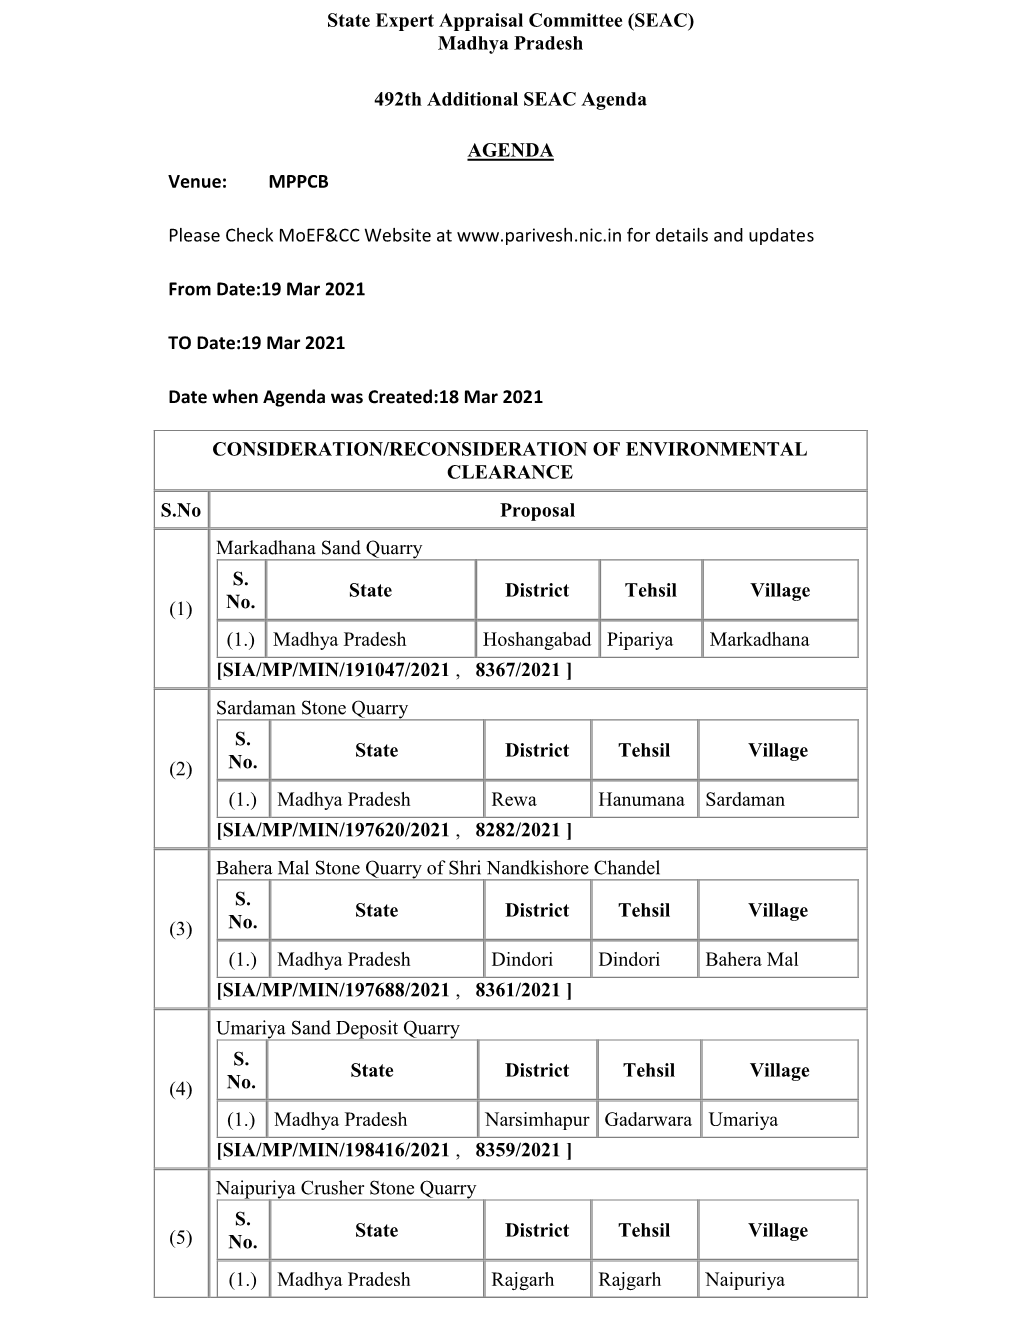 State Expert Appraisal Committee (SEAC) Madhya Pradesh